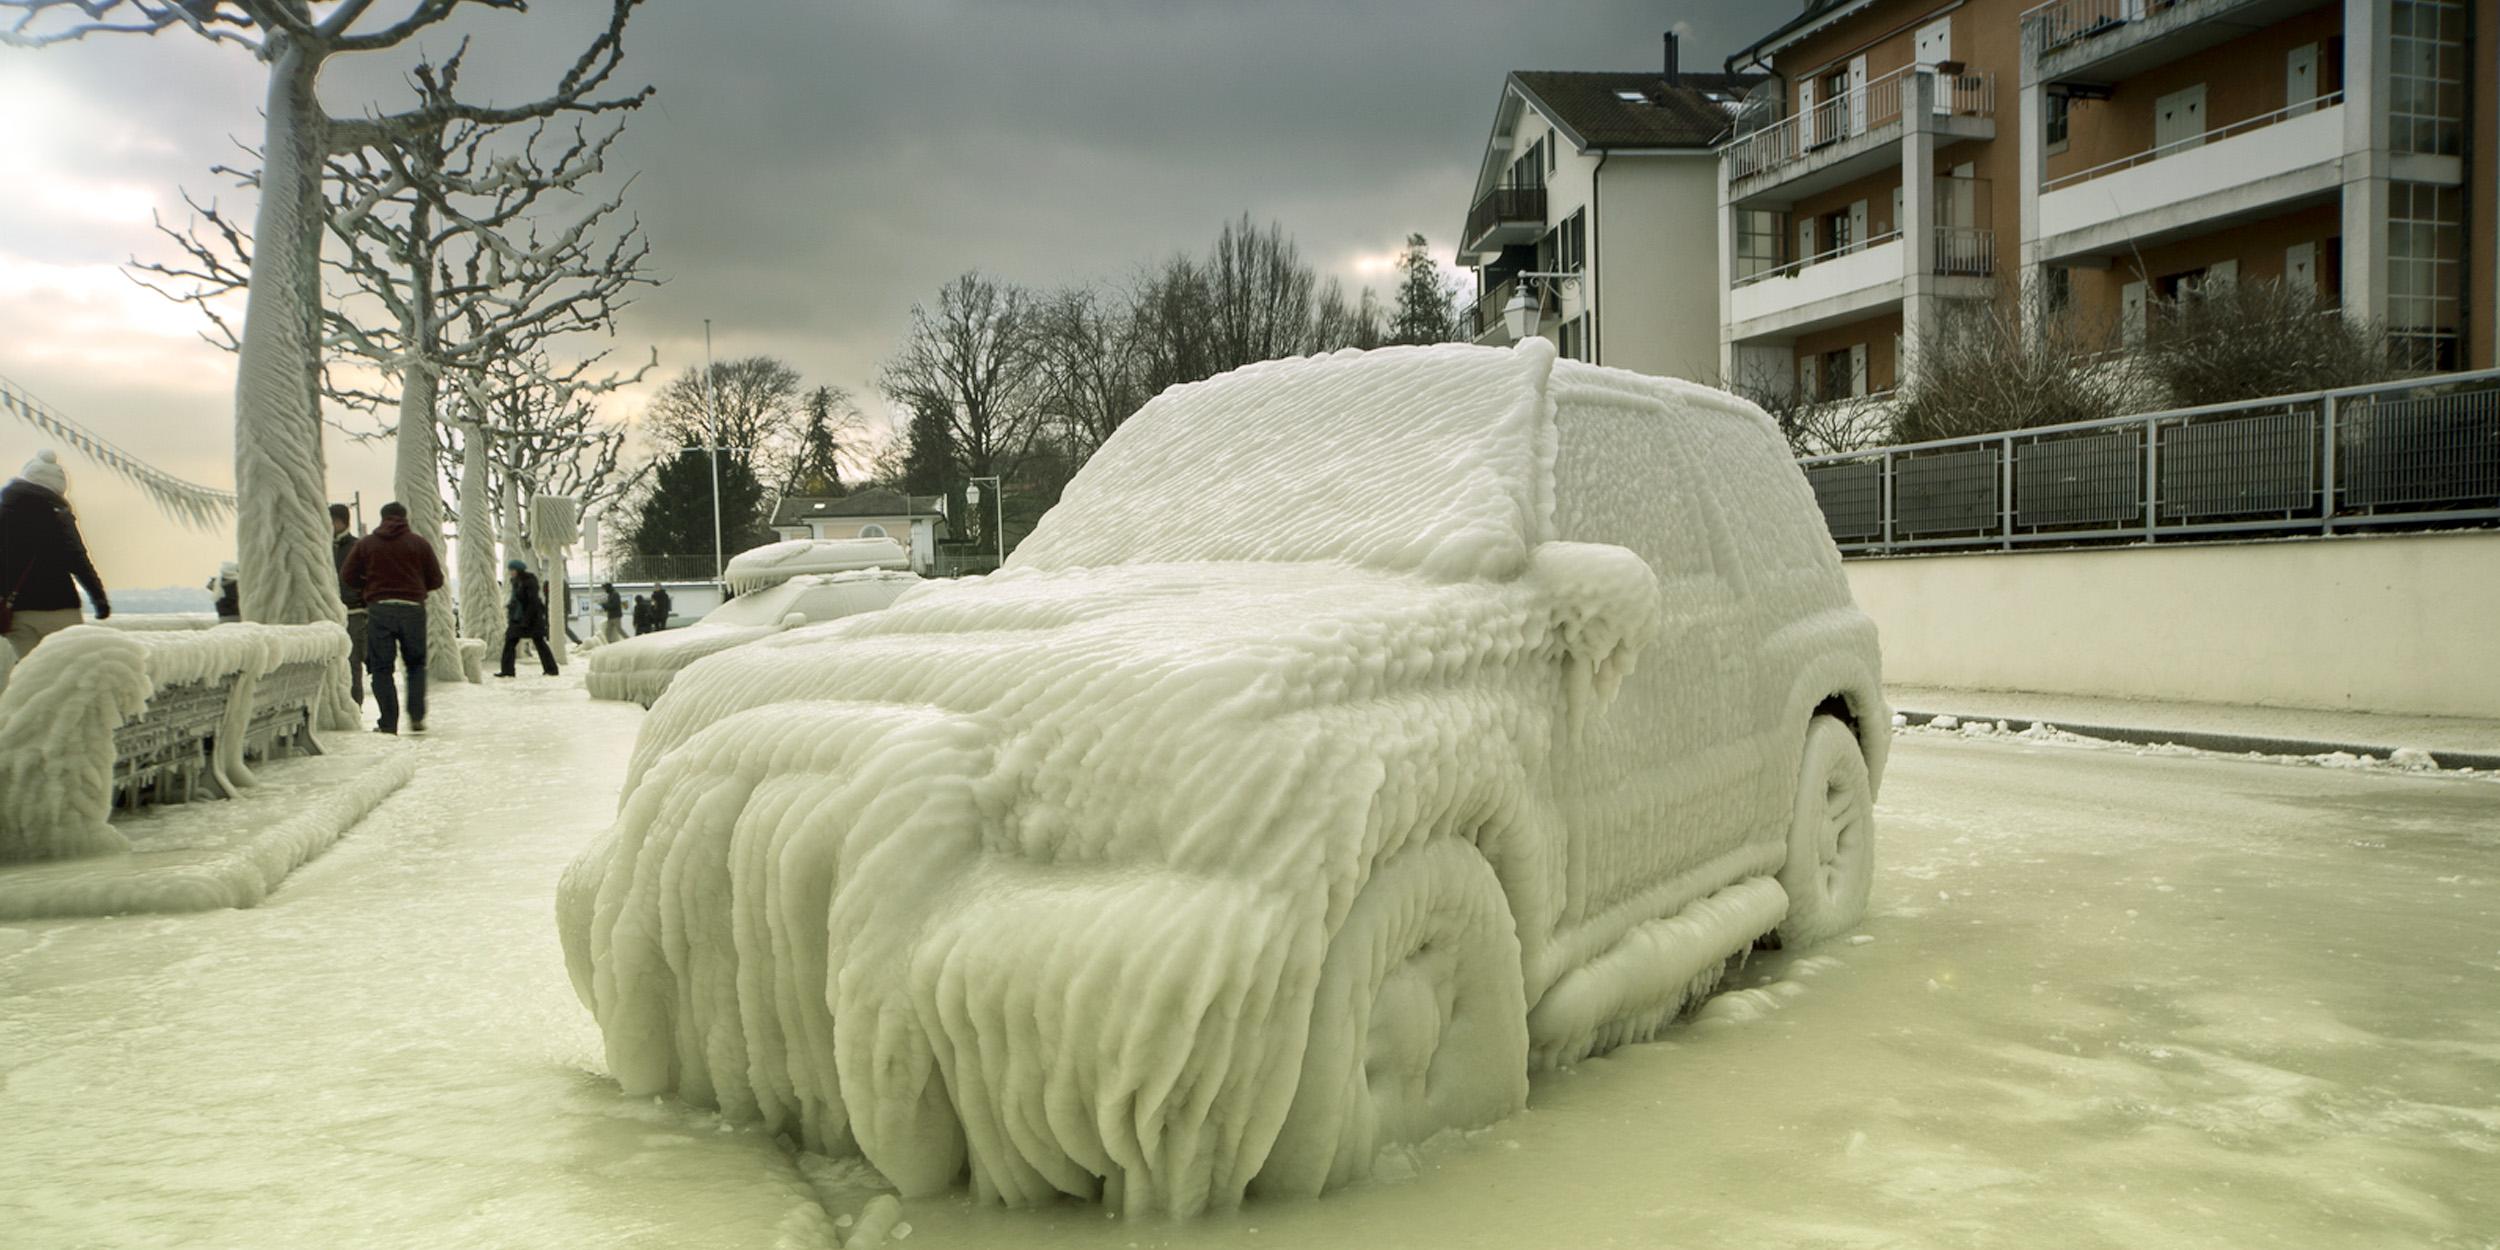 Cotxe congelat. Com fer front?